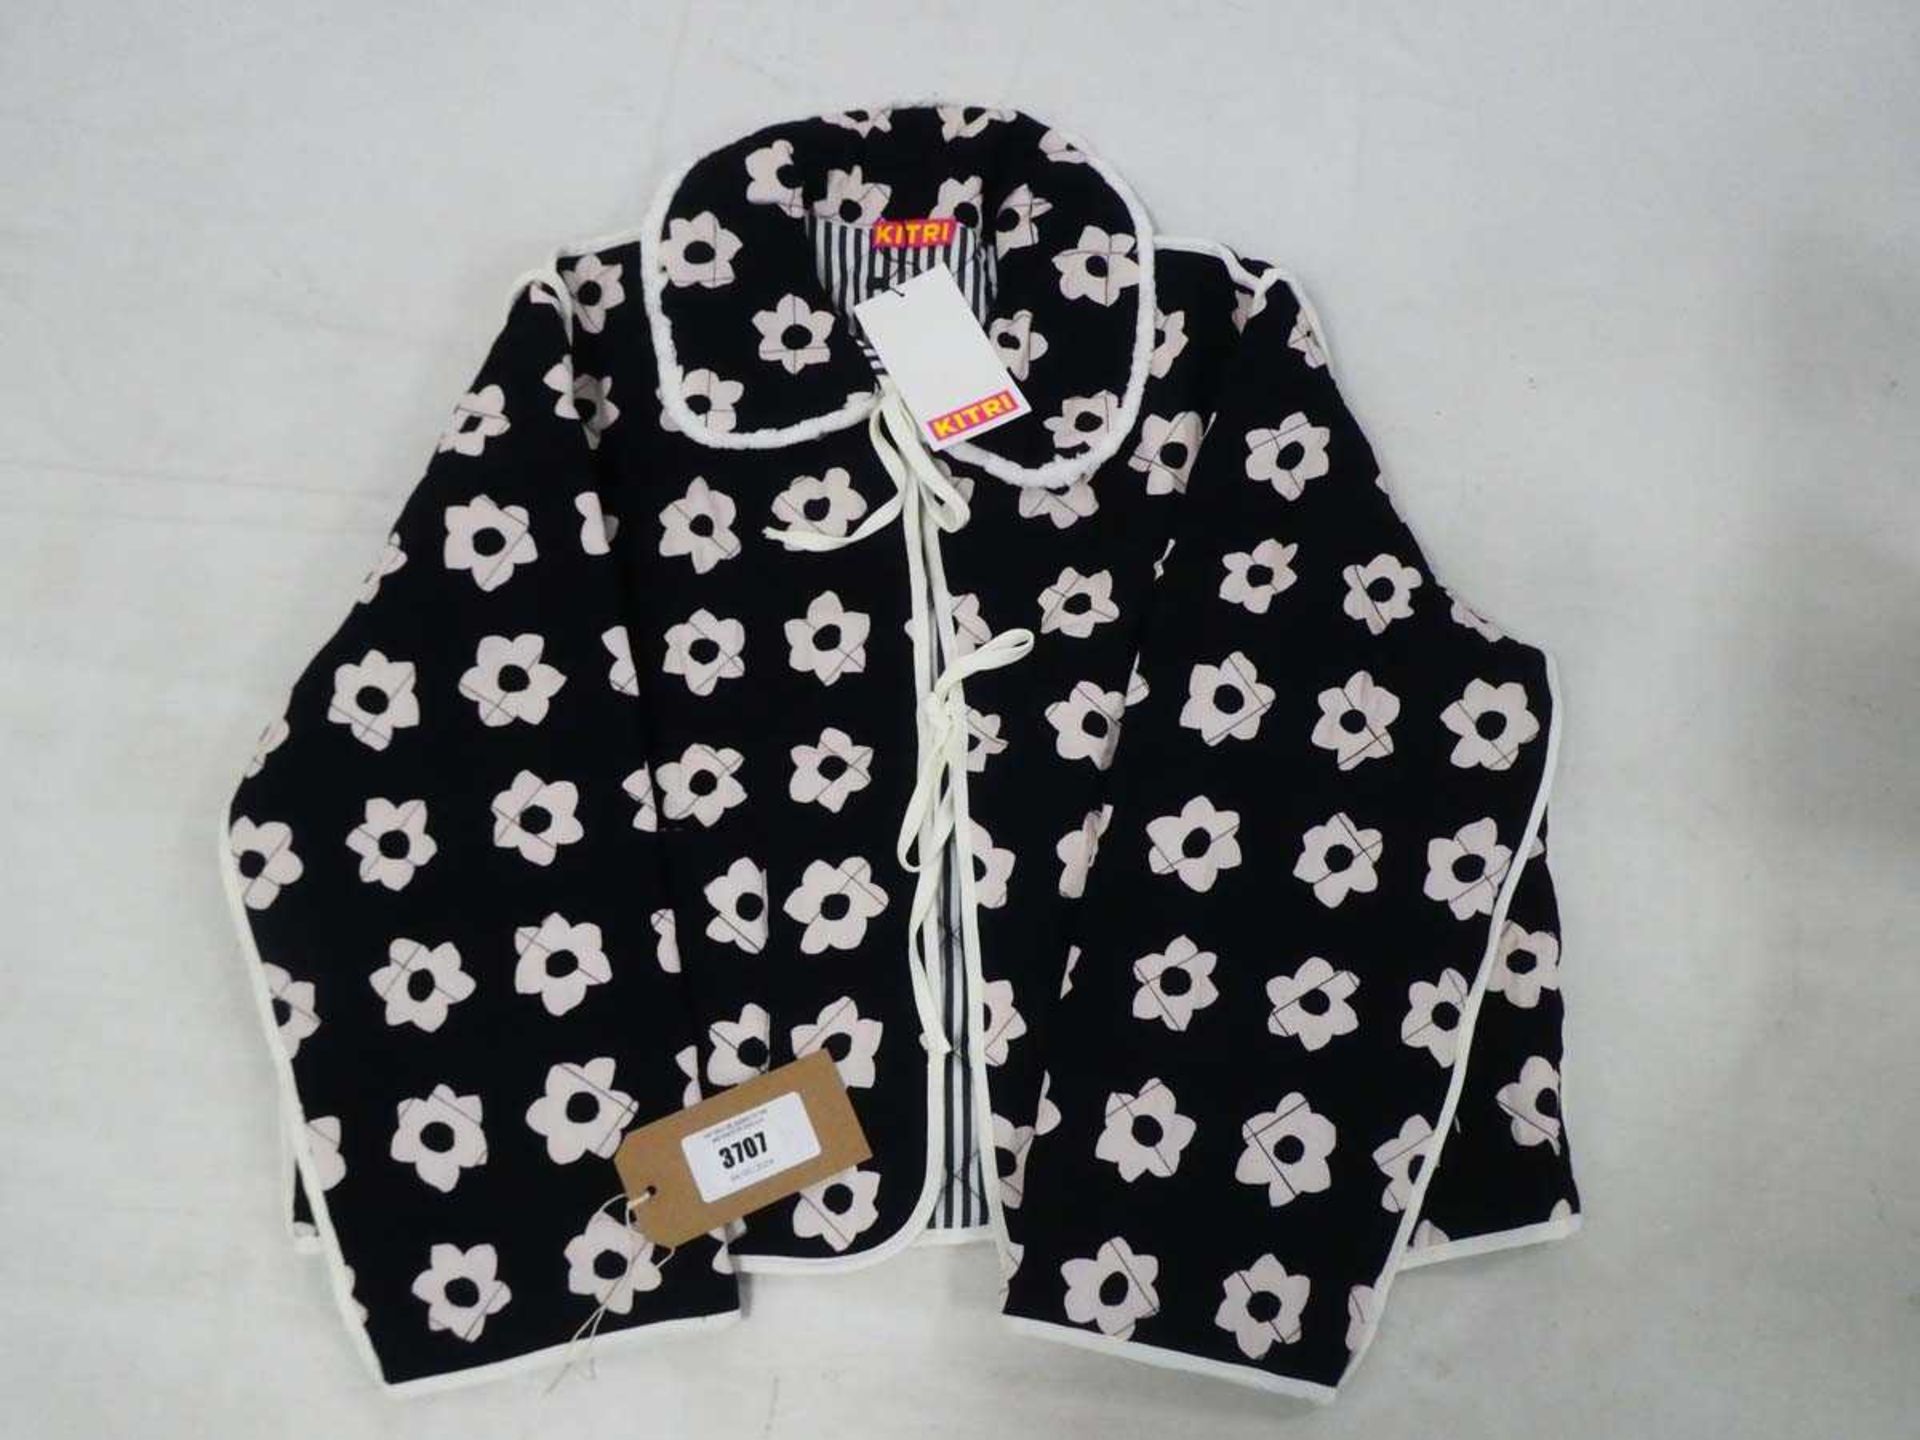 +VAT Kitri piper black tiled floral print reversible quilted jacket size large (hanging)